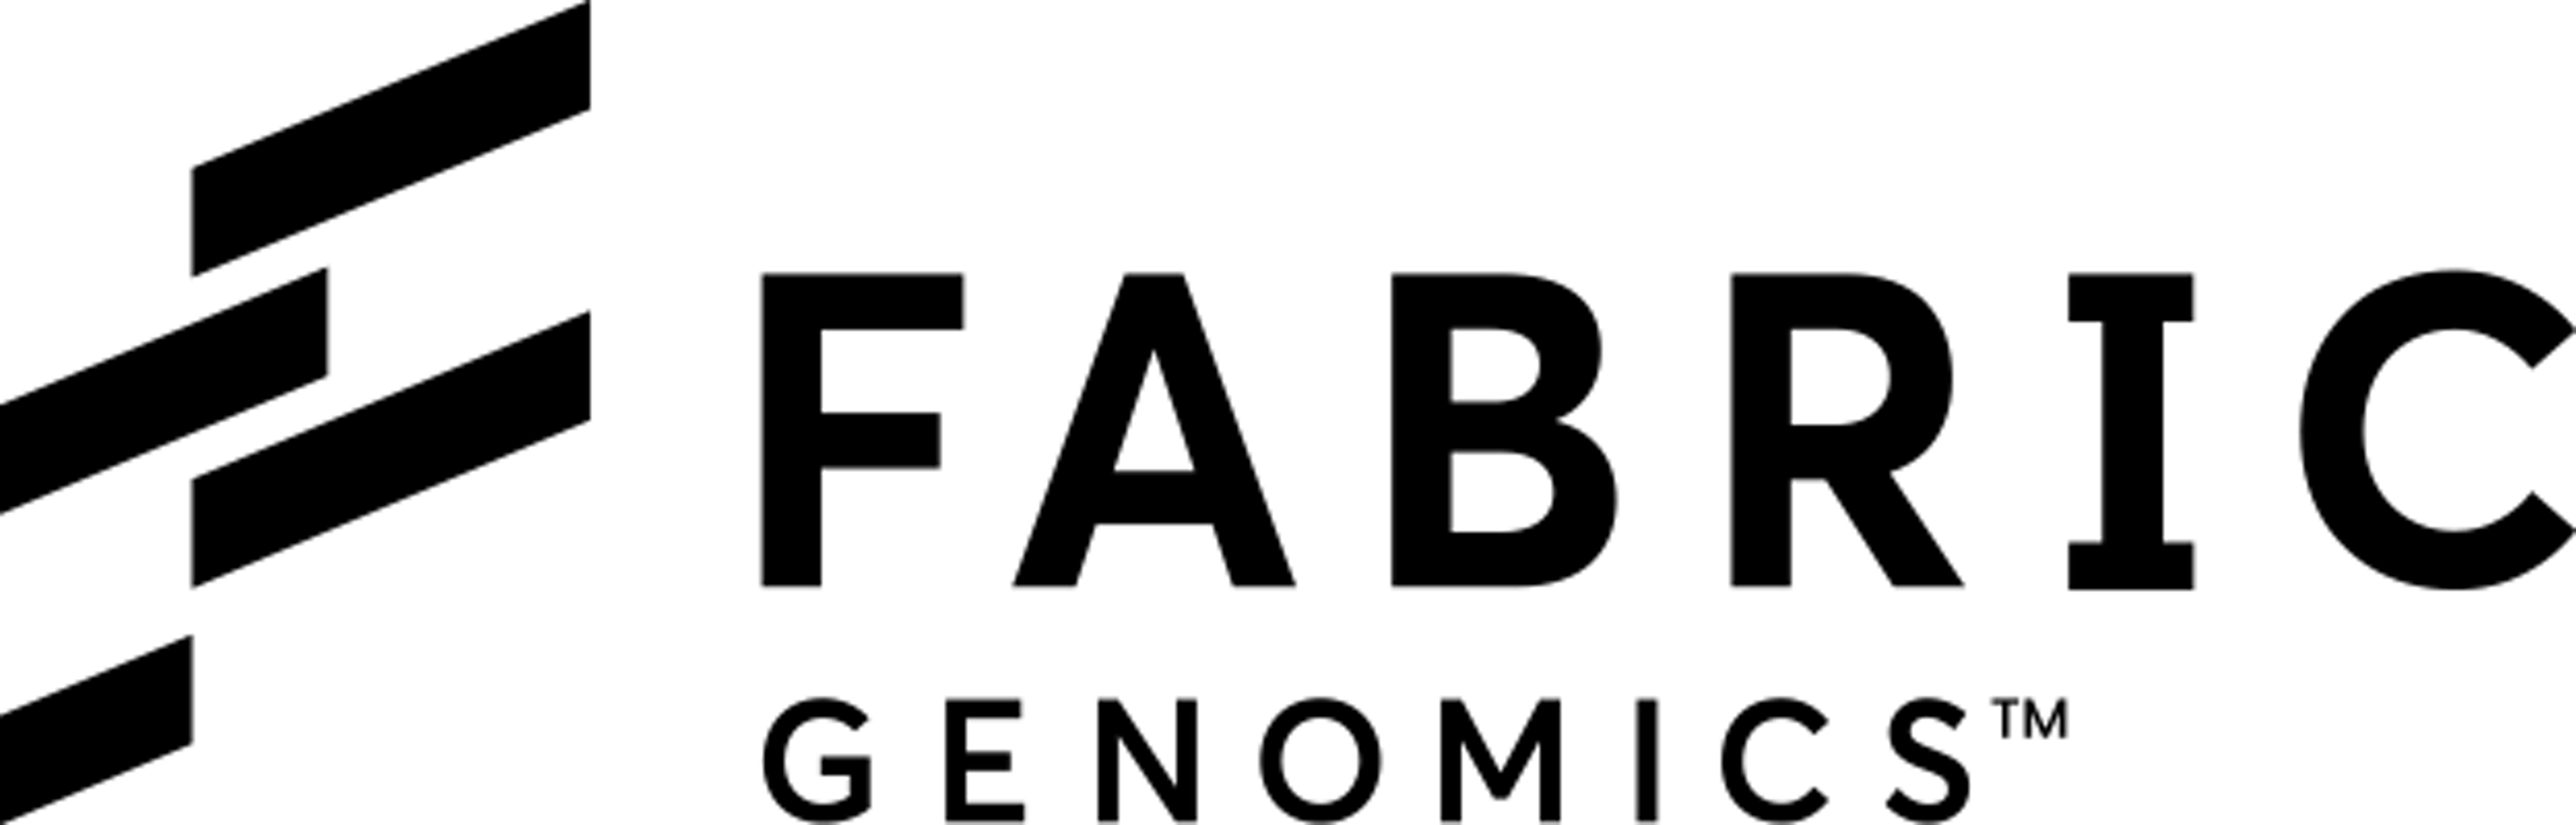 Fabric Genomics Logo Clipart (4160x1333), Png Download